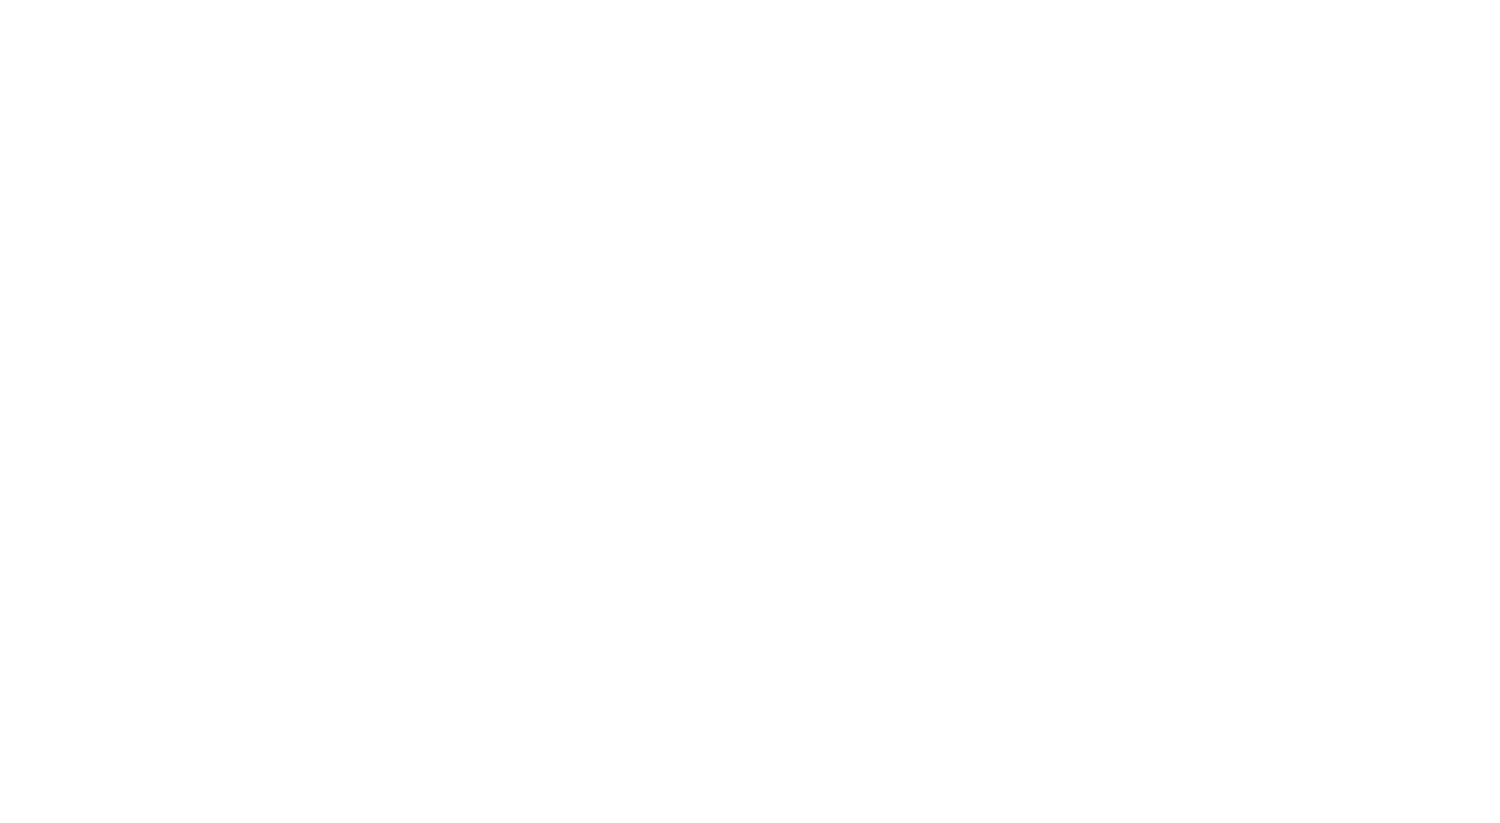 Alex Chorley